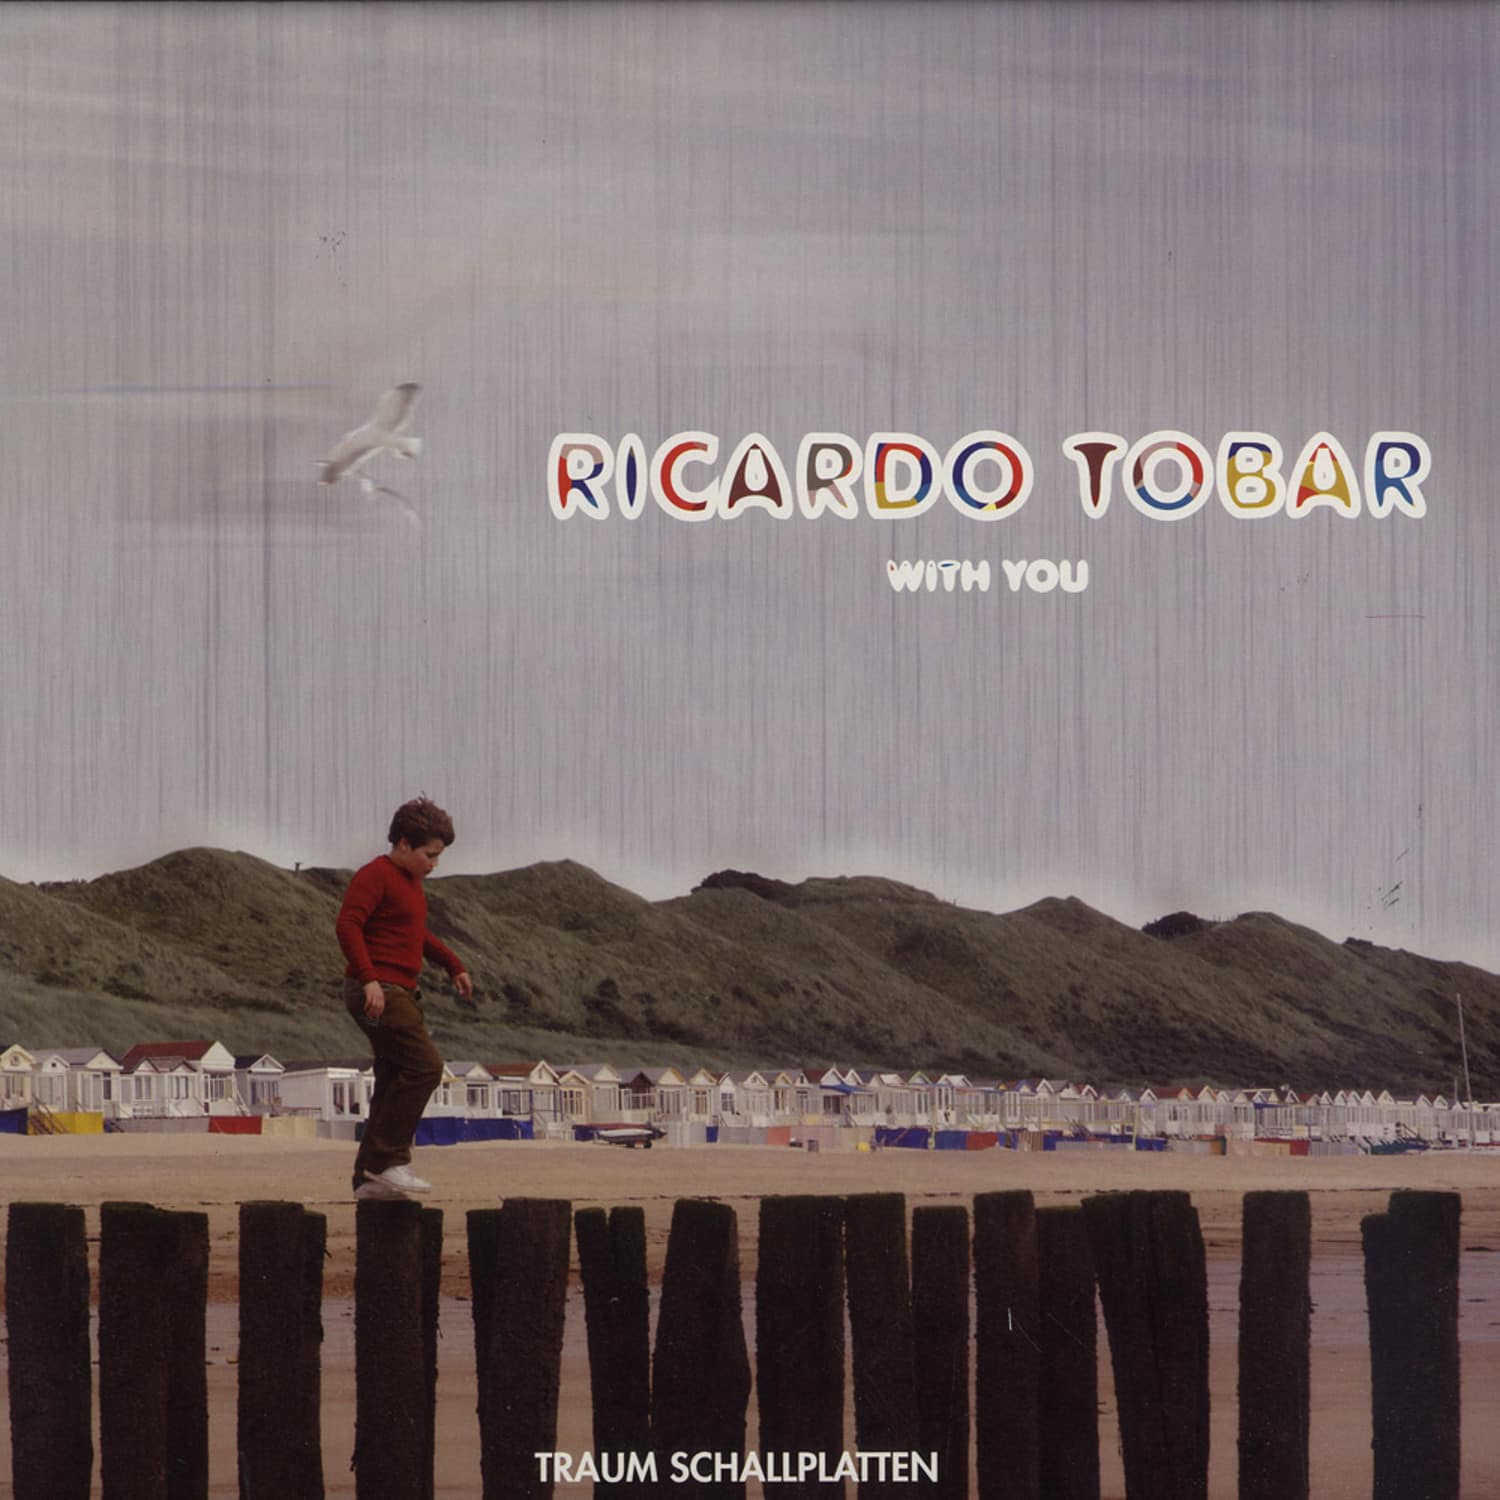 Ricardo Tobar - WITH YOU